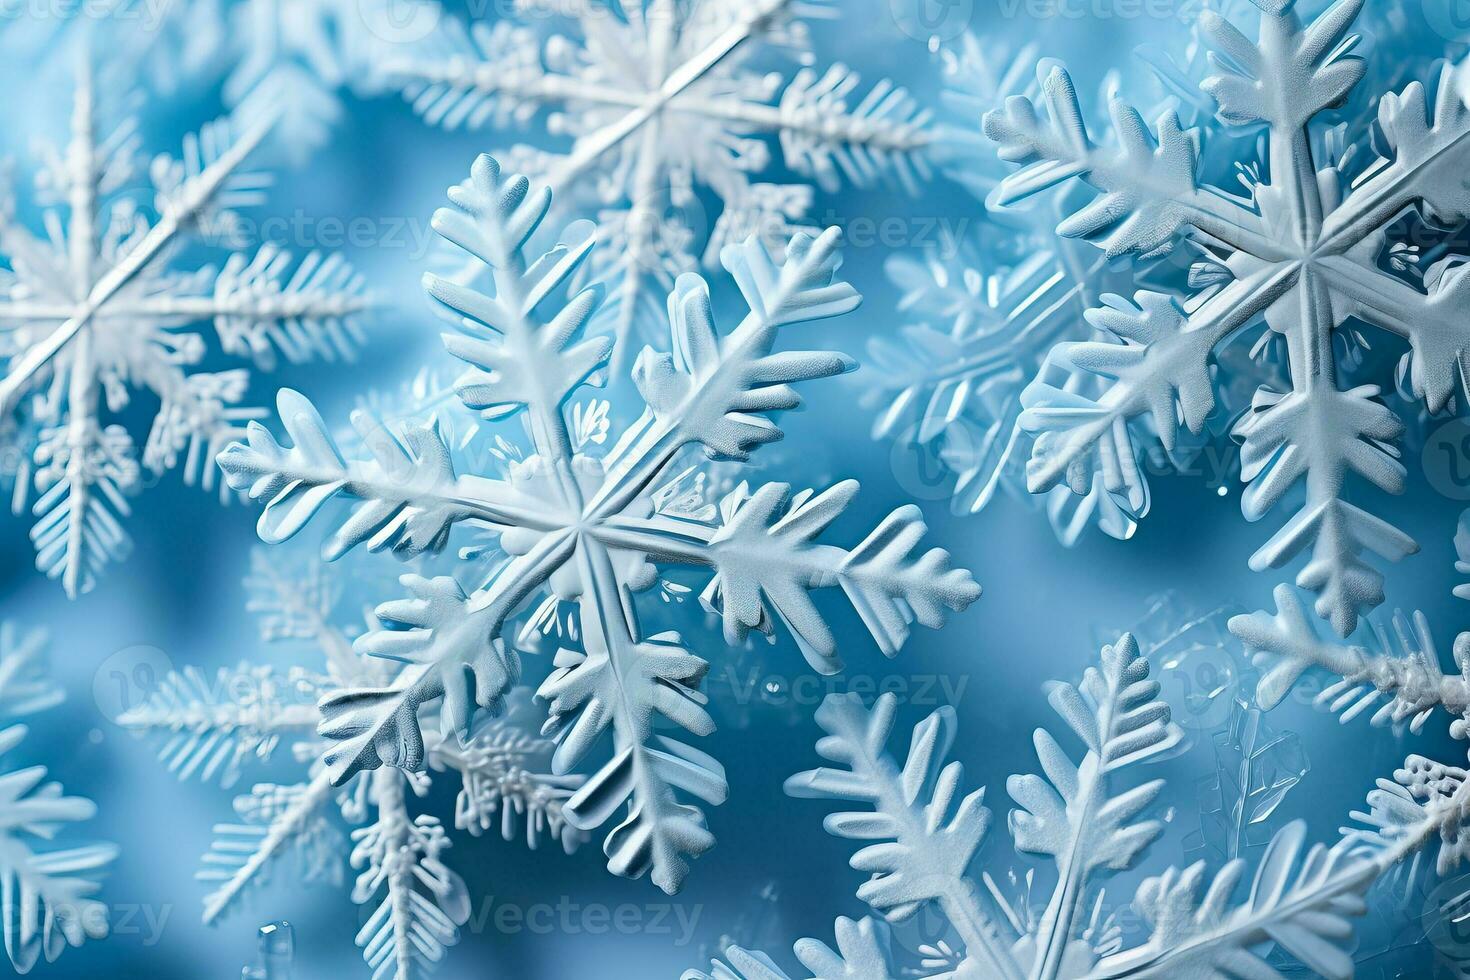 de cerca de intrincado copos de nieve formando un bajo alivio modelo en un sereno glacial azul antecedentes foto